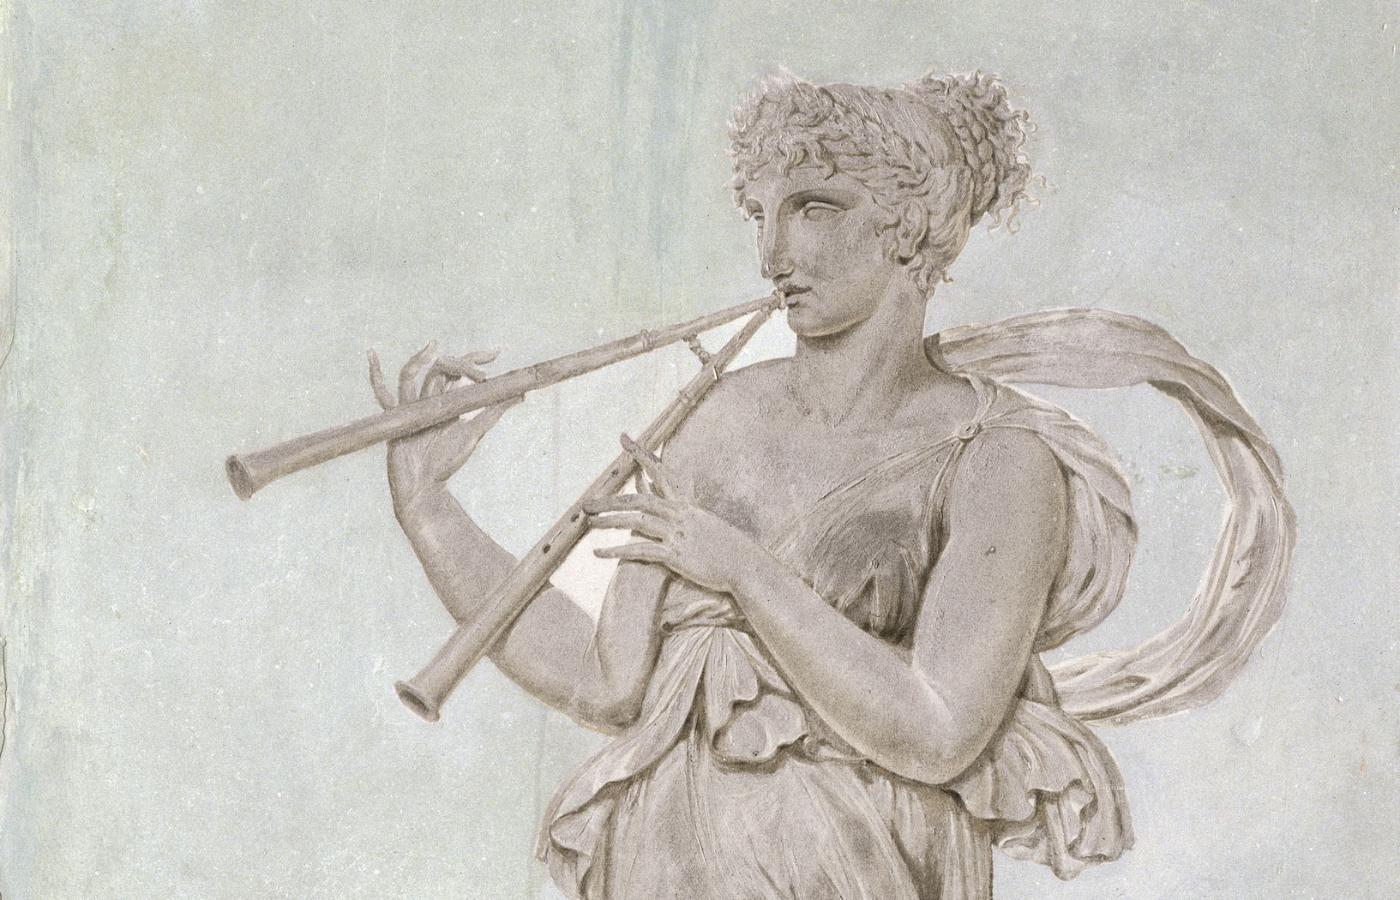 Euterpe – grecka muza poezji lirycznej i gry na aulosie, czyli podwójnych piszczałkach.